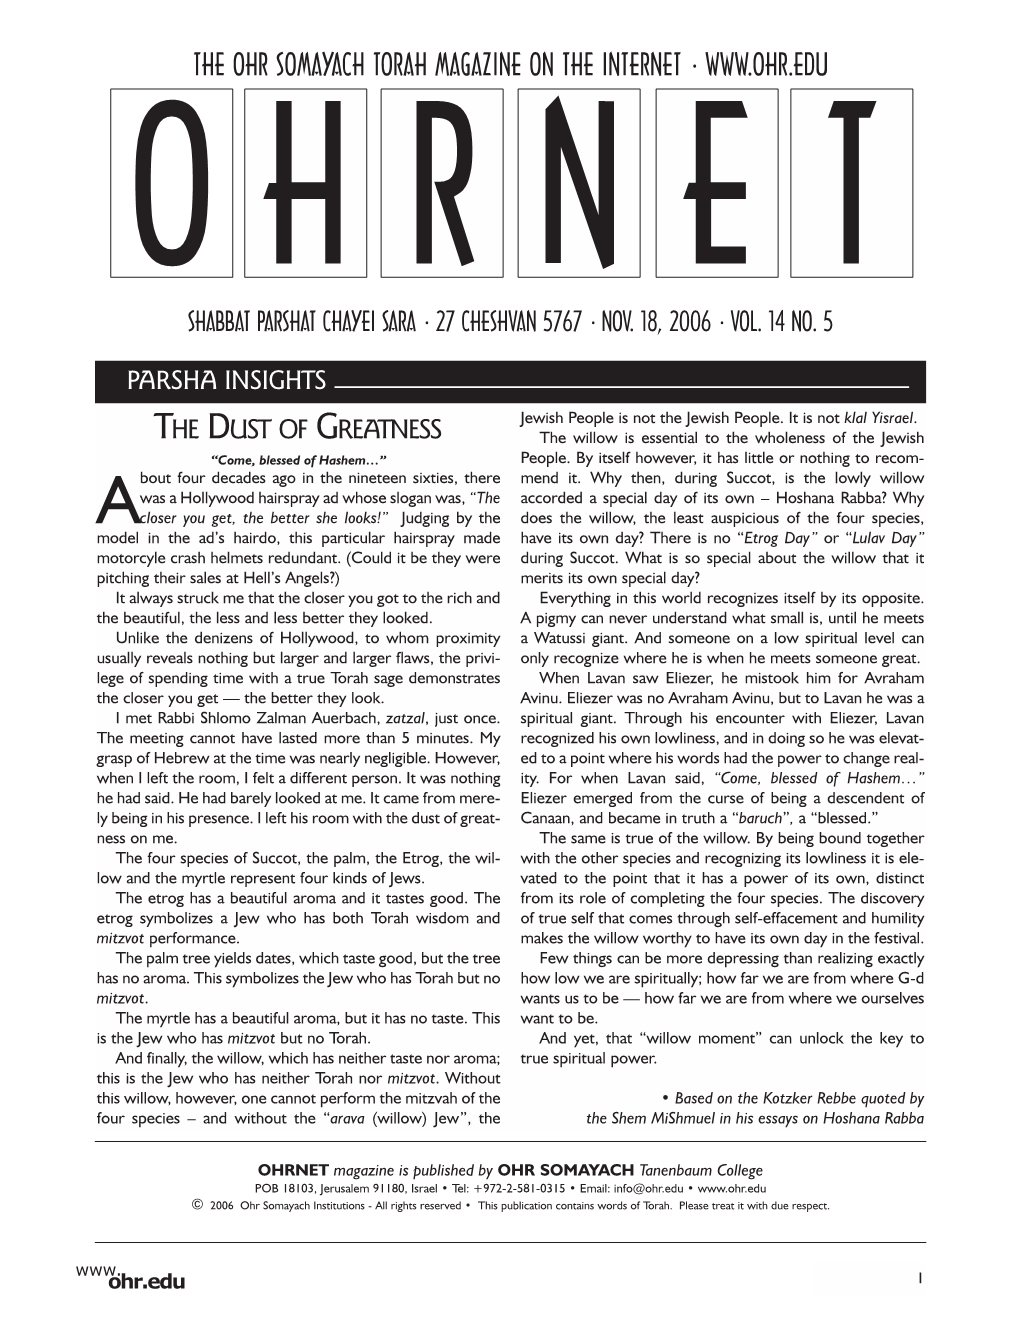 The Ohr Somayach Torah Magazine on the Internet • O H R N E T Shabbat Parshat Chayei Sara • 27 Cheshvan 5767 • Nov